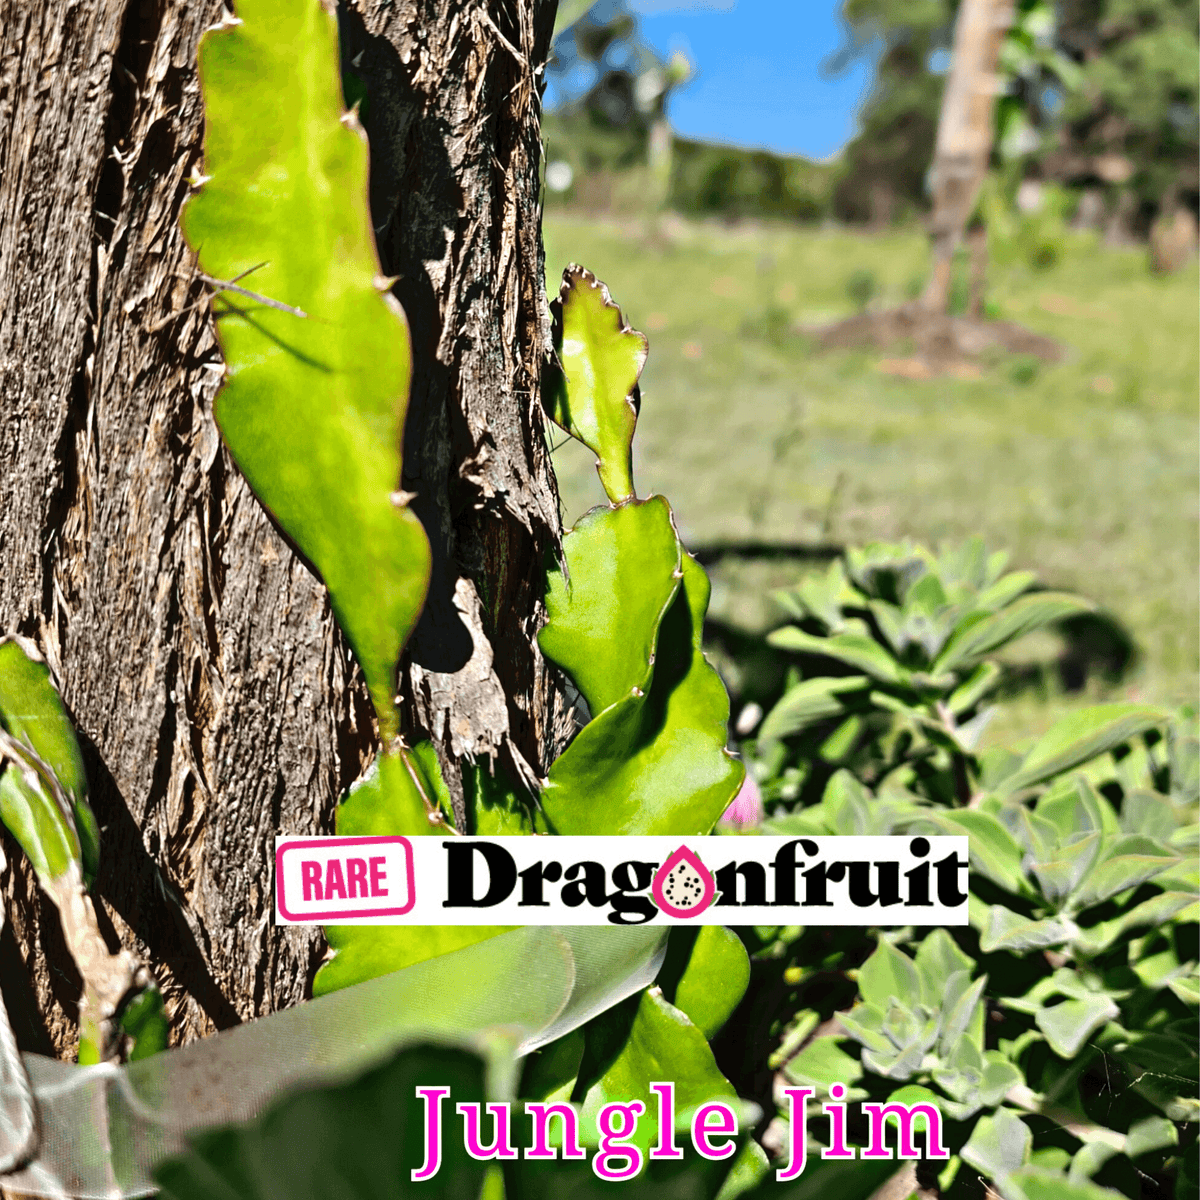 Jungle Jim Dragon Fruit - Rare Dragon Fruit